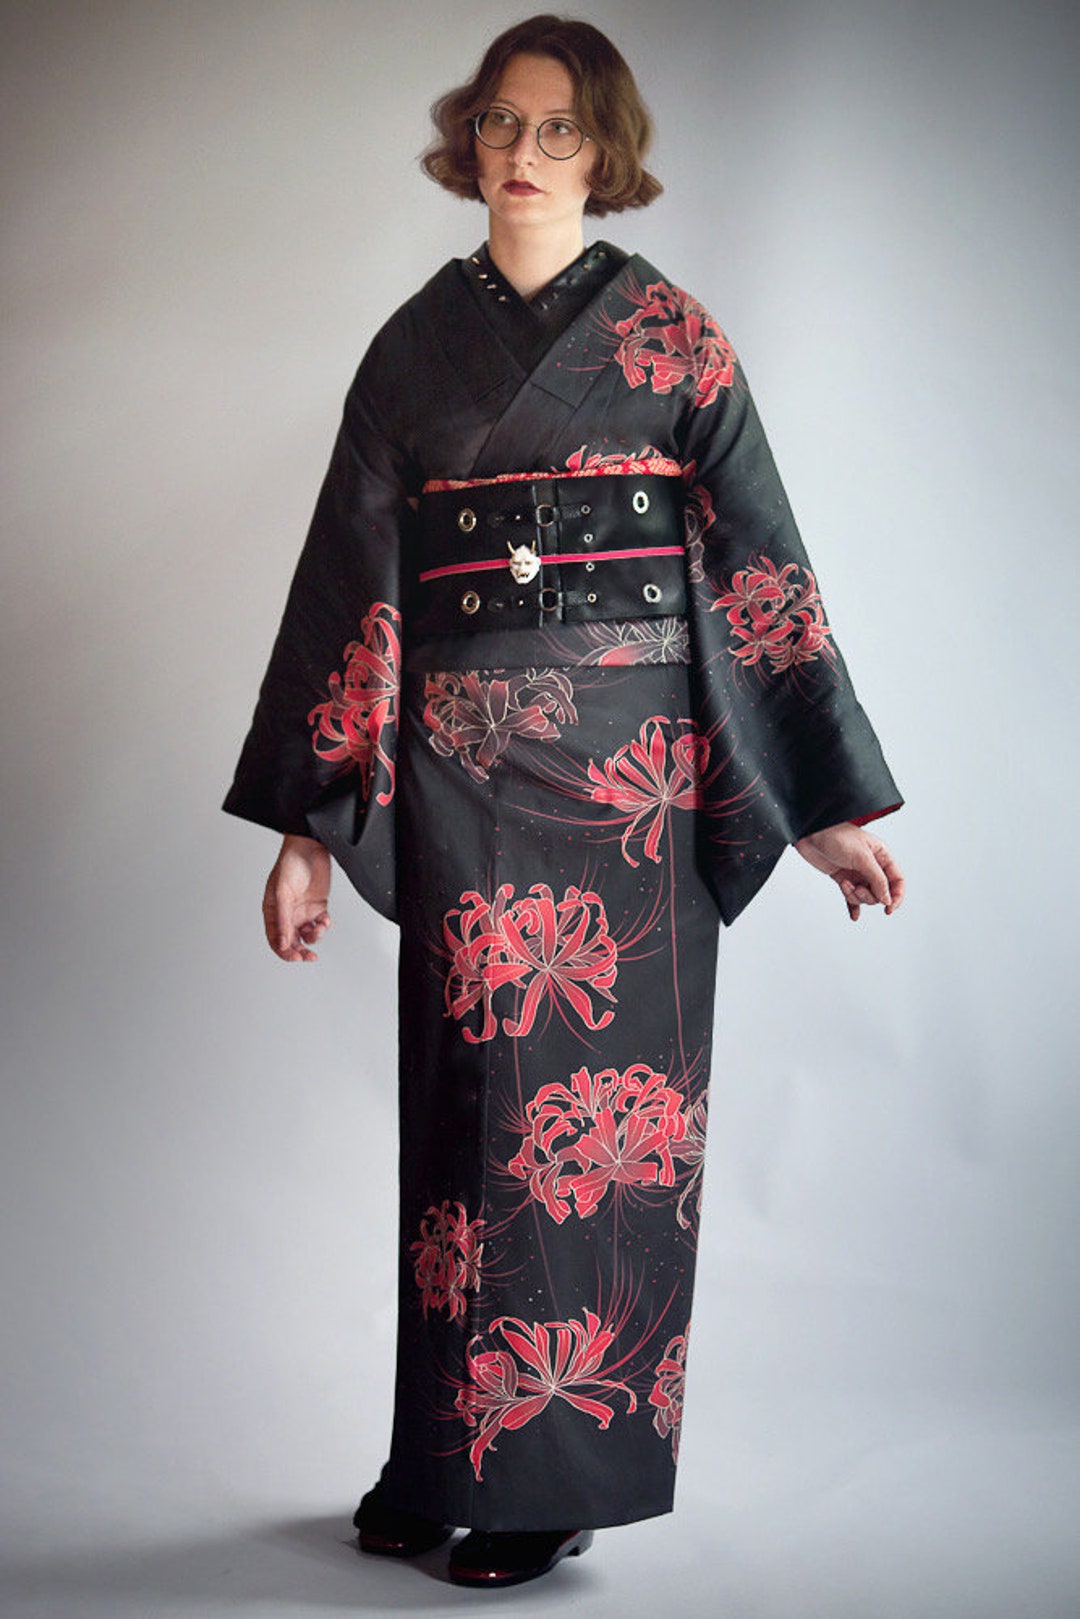 Kinchaku Yukata Kimono Purse - Choose Your Own Fabric - Matsuri